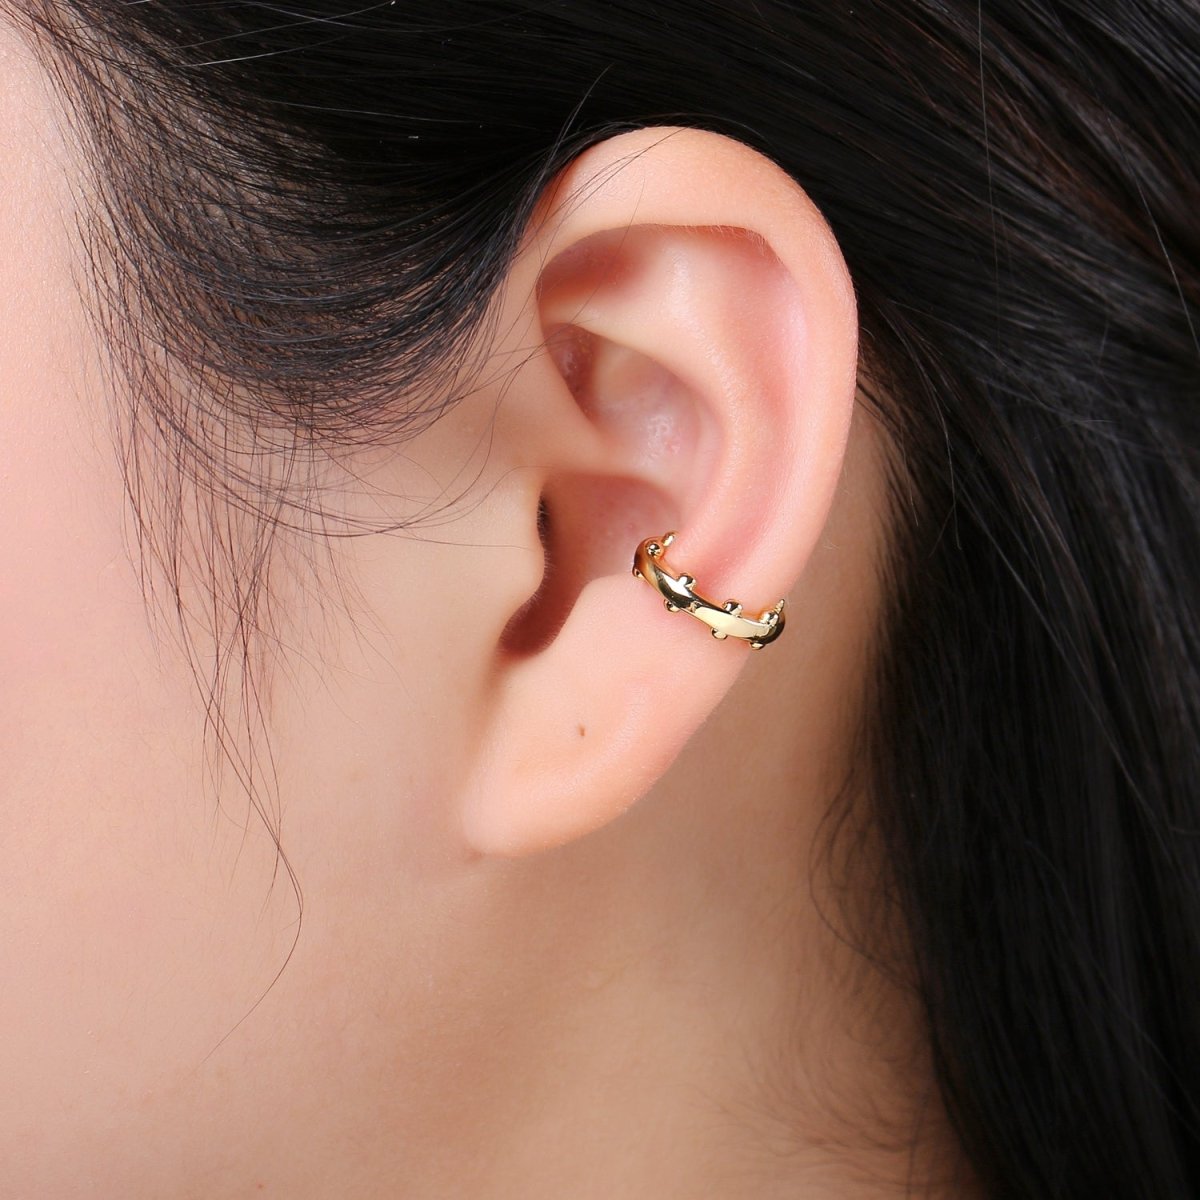 1x Ear Cuff, Gold Earcuff, Non-pierced, Beaded Ear Cuff Fake Conch Earring, No Piercing, Faux Pierced Hoop Dainty Beaded Earring, AI-086 - DLUXCA